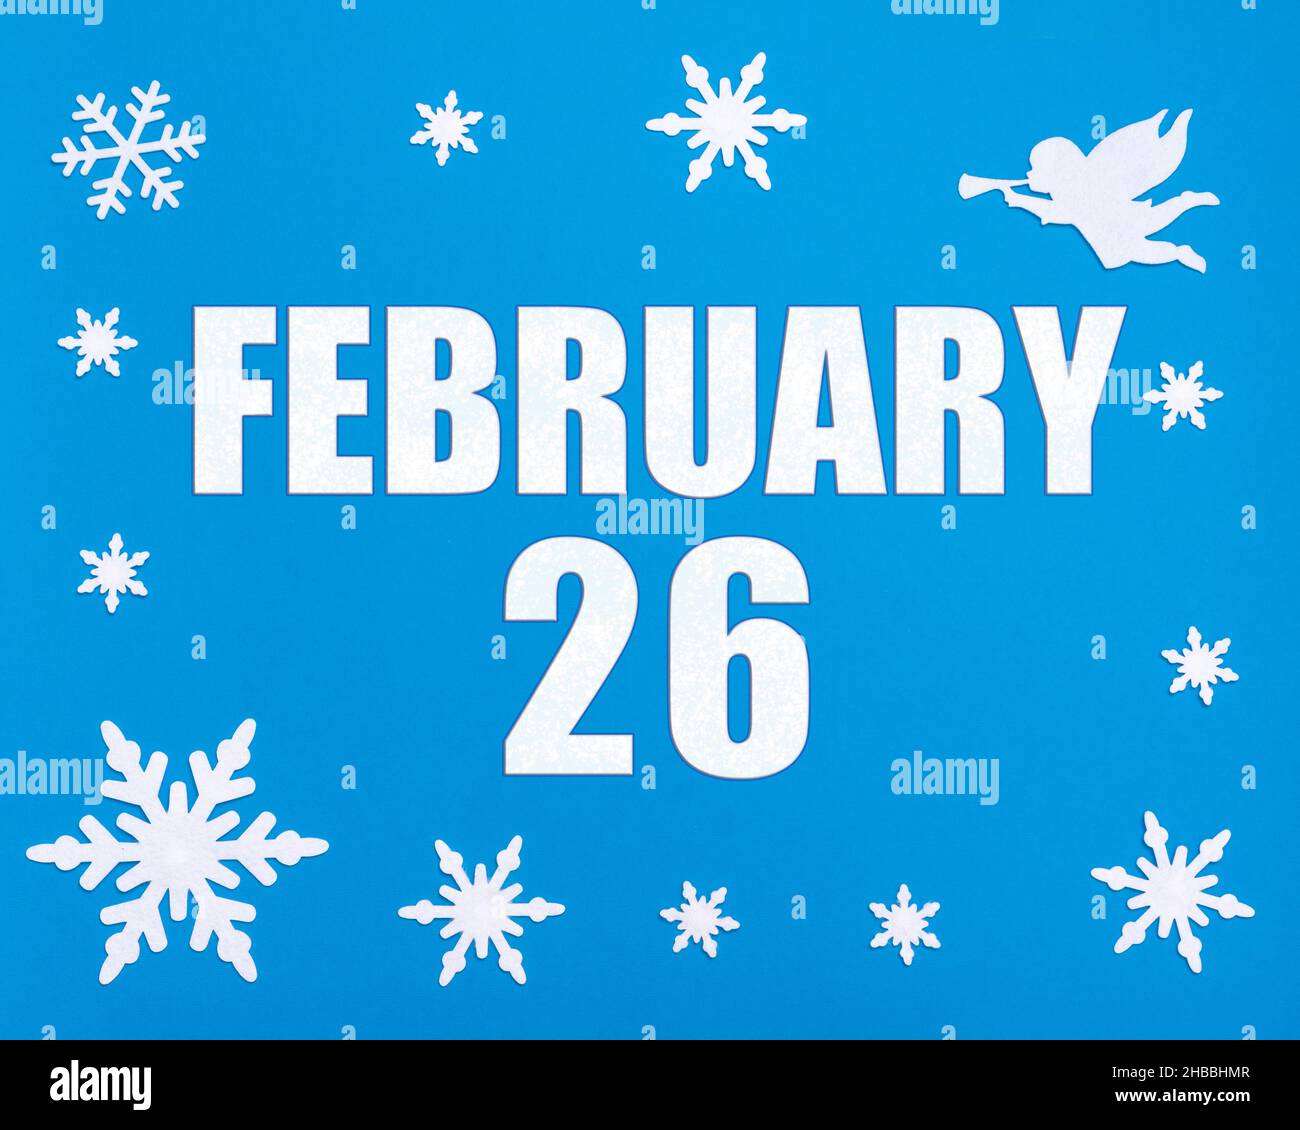 Februar 26th. Winter blauer Hintergrund mit Schneeflocken, Engel und einem Kalenderdatum. Tag 26 des Monats. Winter Monat, Tag des Jahres Konzept. Stockfoto